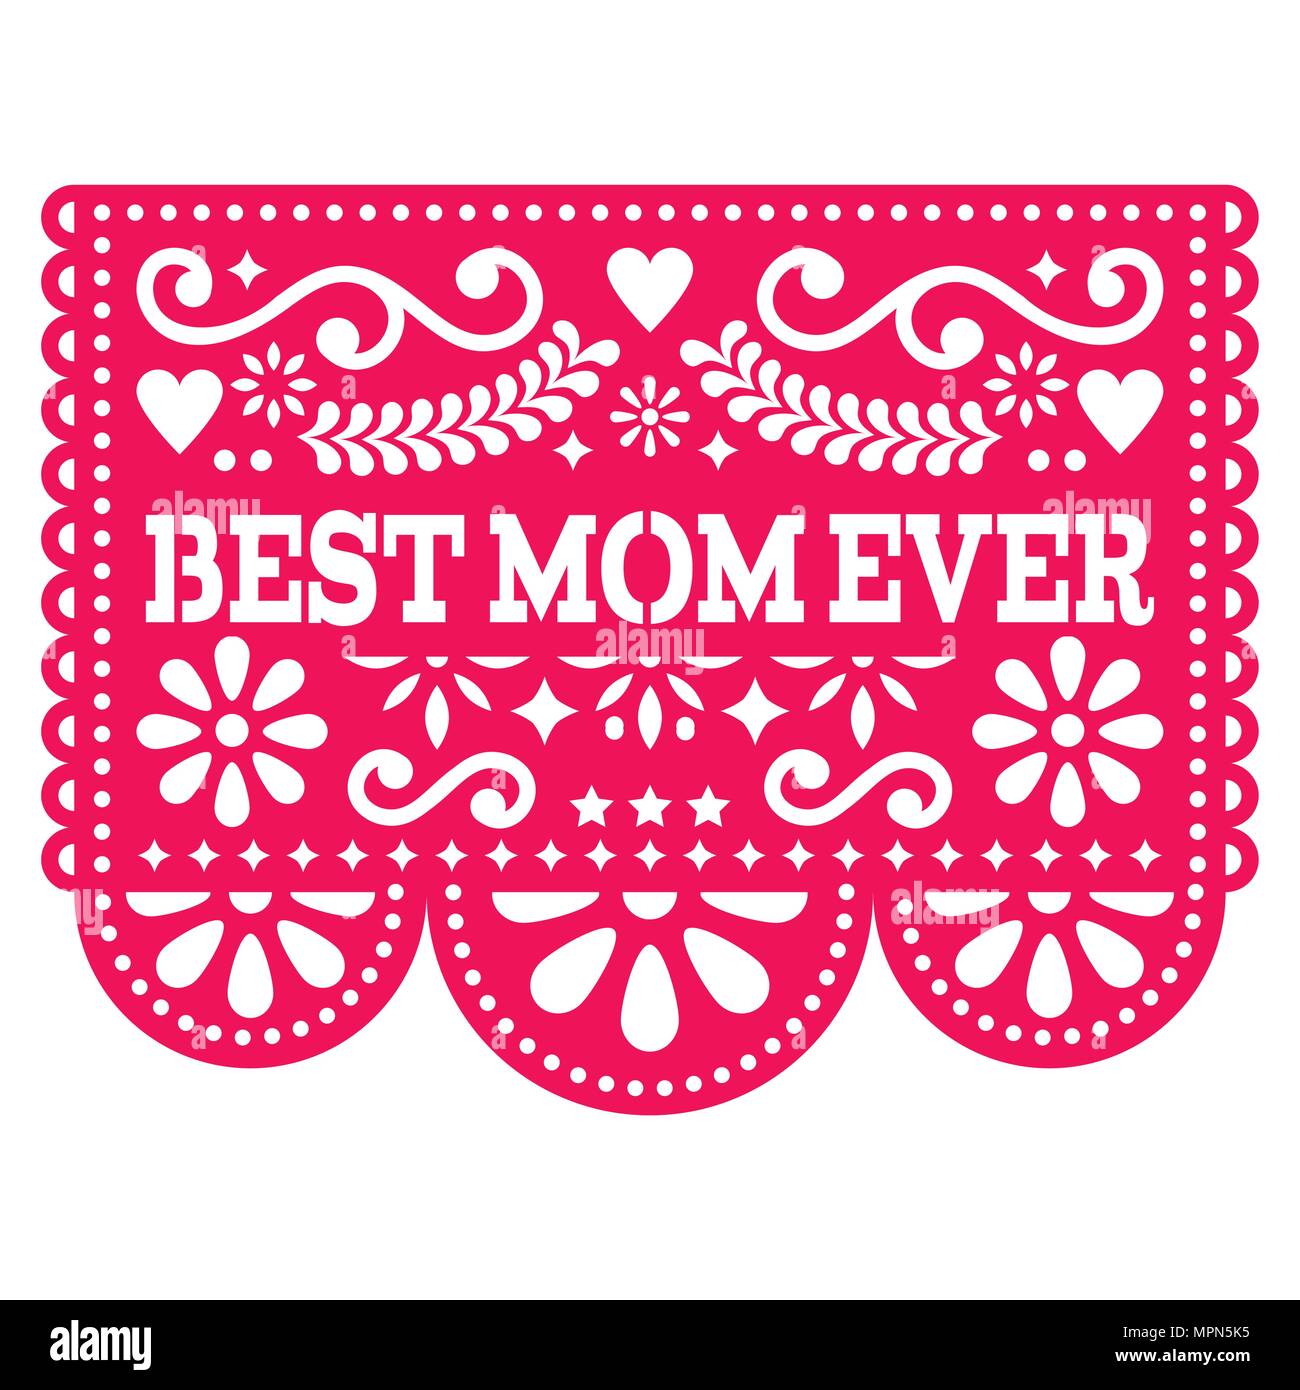 Meilleur vecteur jamais Maman, carte de souhaits Bonne Fête des mères - papel picado design mexicain en rose décoration Illustration de Vecteur